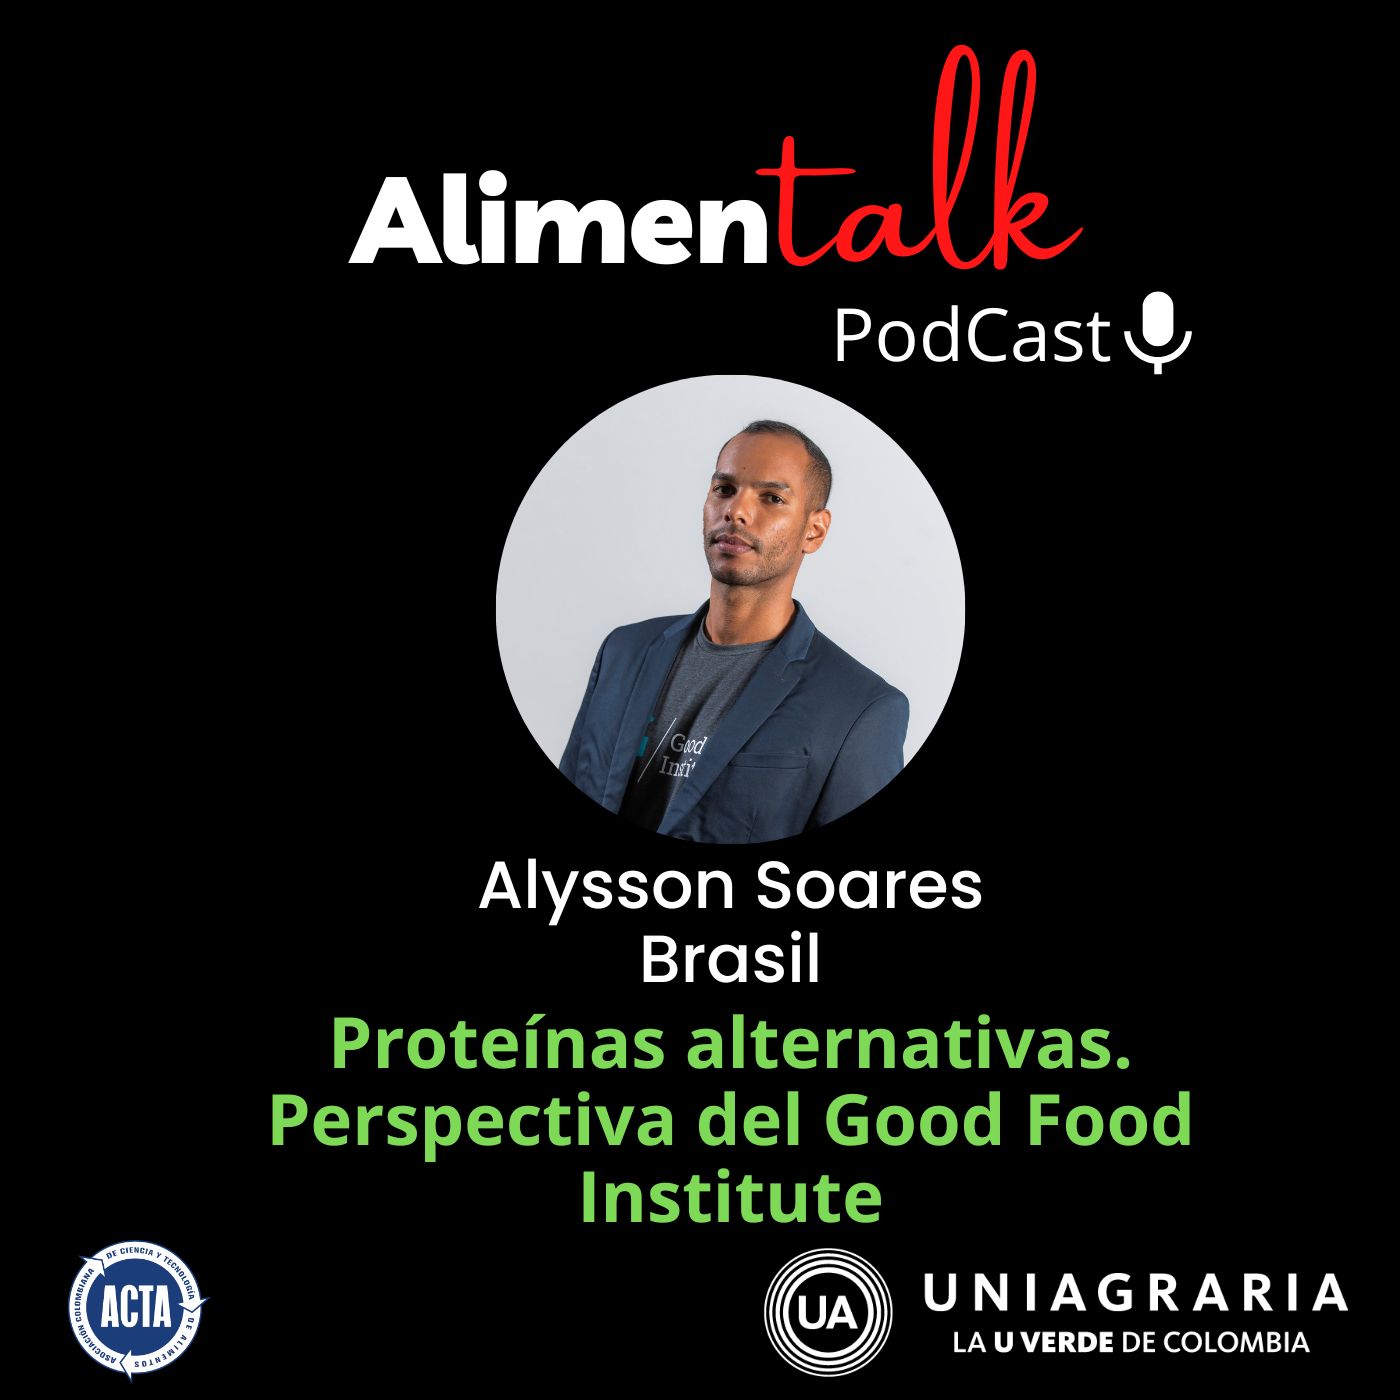 AlimenTalk podCast: Proteinas alternativas. Perspectiva del Good Food Institute